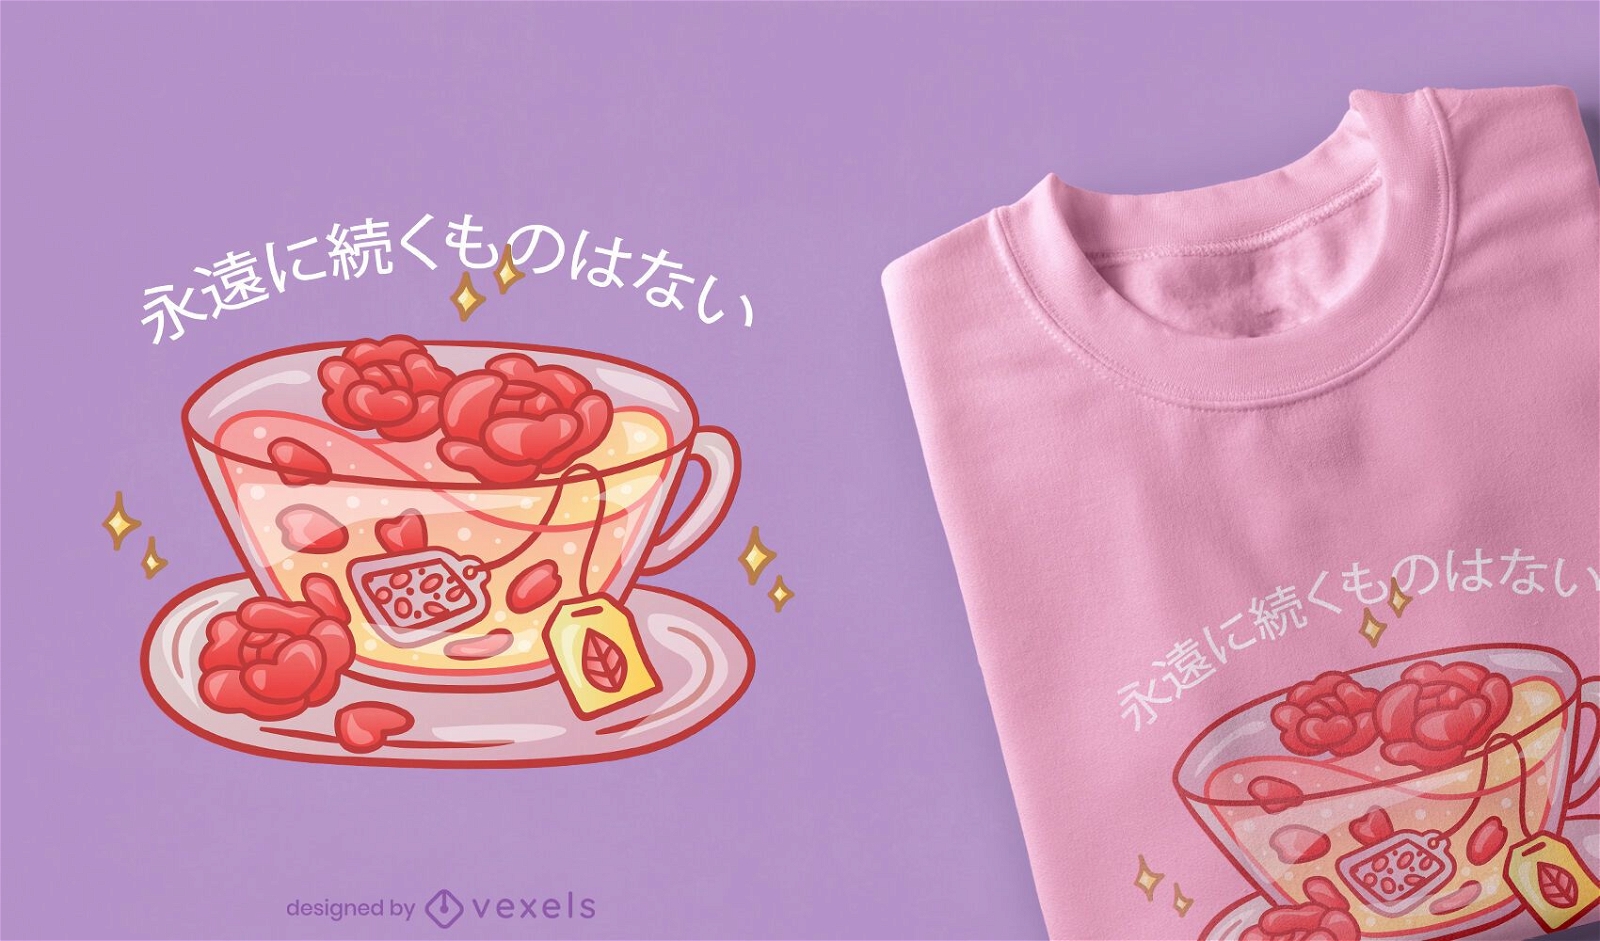 Rose tea kawaii t-shirt design